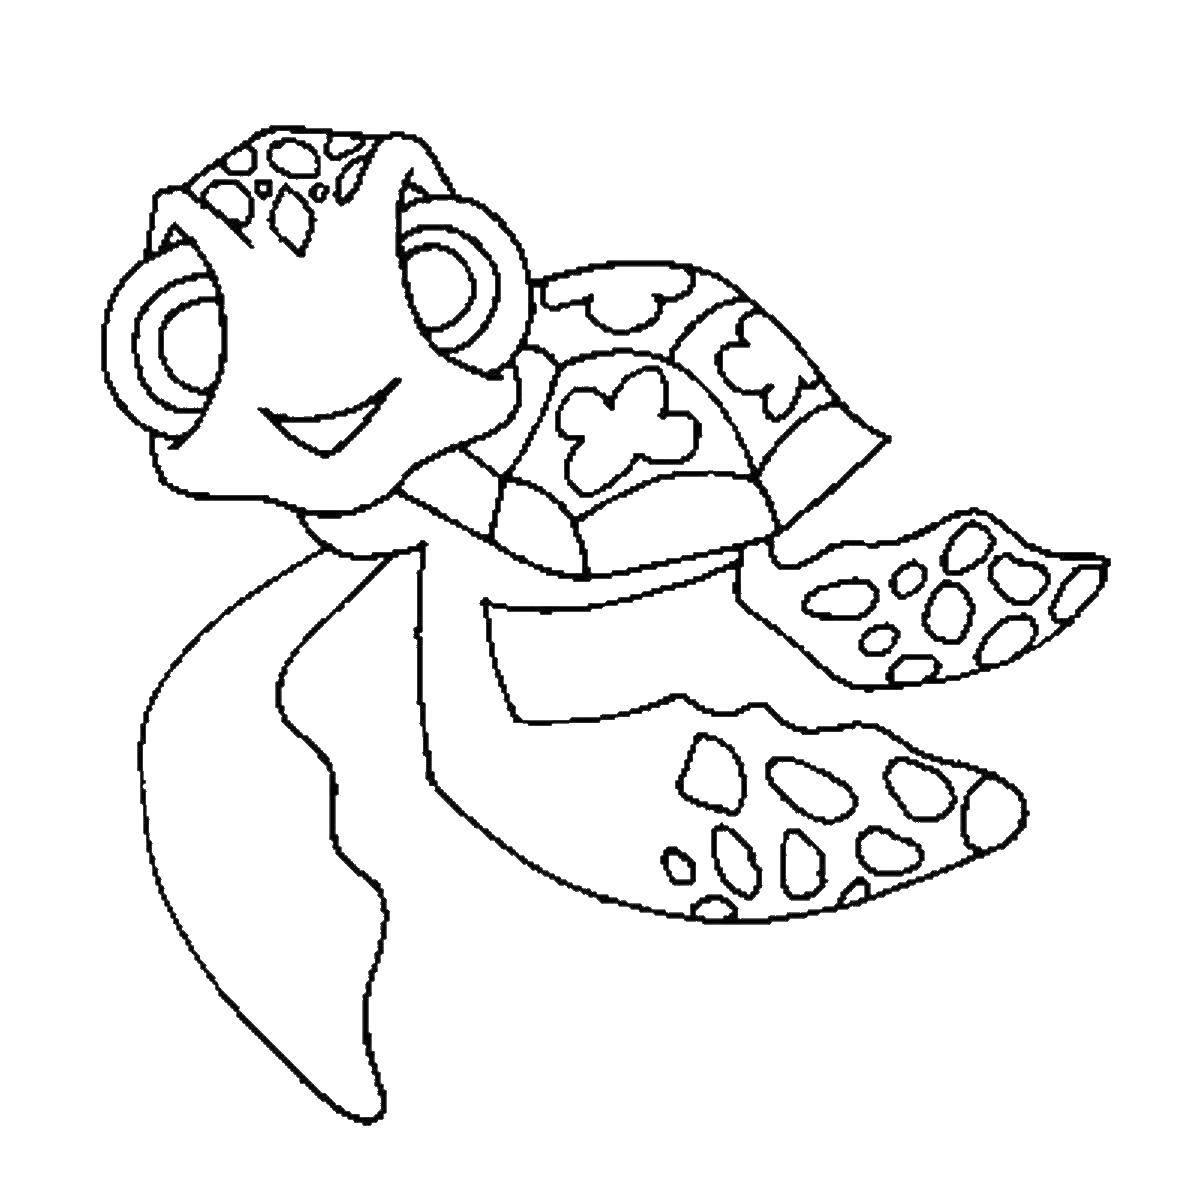 Раскраска череп морской и черепаха для детей. Улучшайте моторику и развивайте творчество бесплатно. (черепаха)